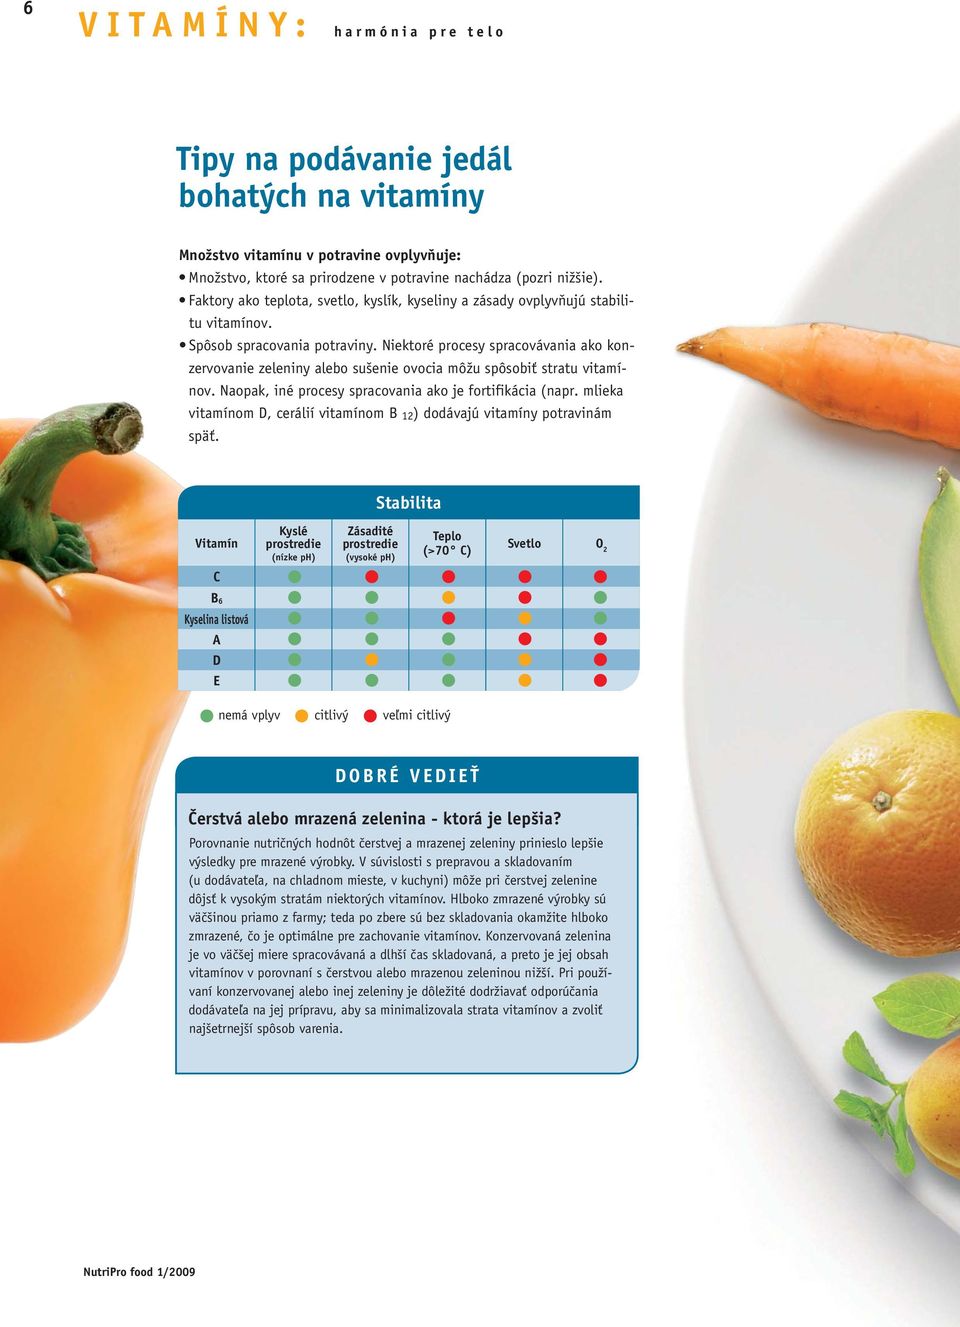 Niektoré procesy spracovávania ako konzervovanie zeleniny alebo sušenie ovocia môžu spôsobiť stratu vitamínov. Naopak, iné procesy spracovania ako je fortifikácia (napr.